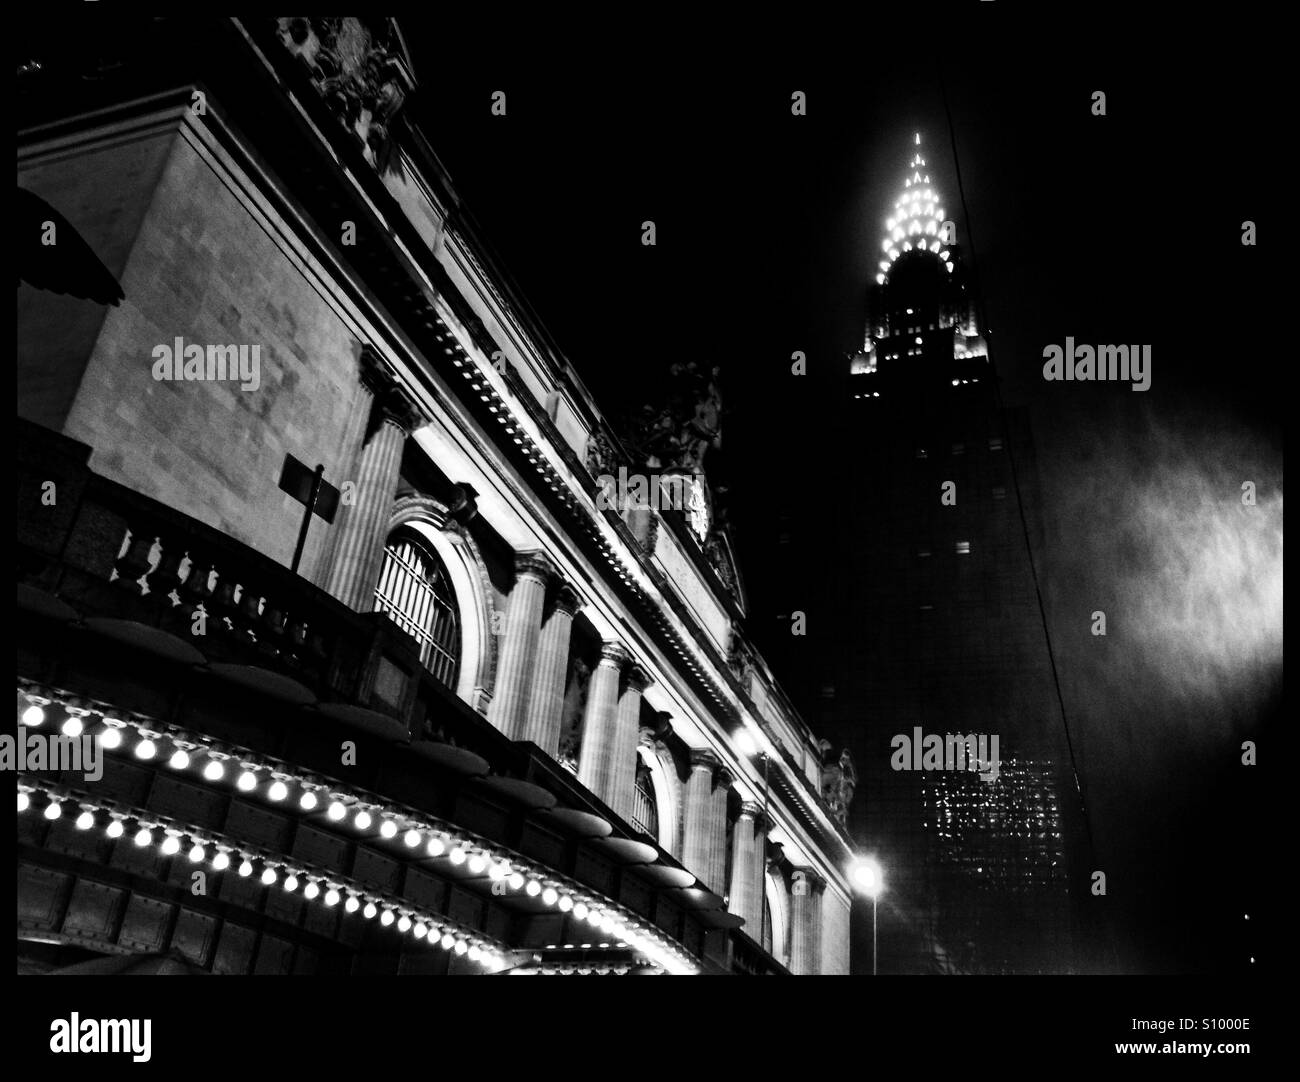 La Grand Central Station e il Chrysler Building illuminato in una piovosa notte di nebbia in bianco e nero di moody iPhoneography attrazioni di Manhattan a New York City. Foto Stock